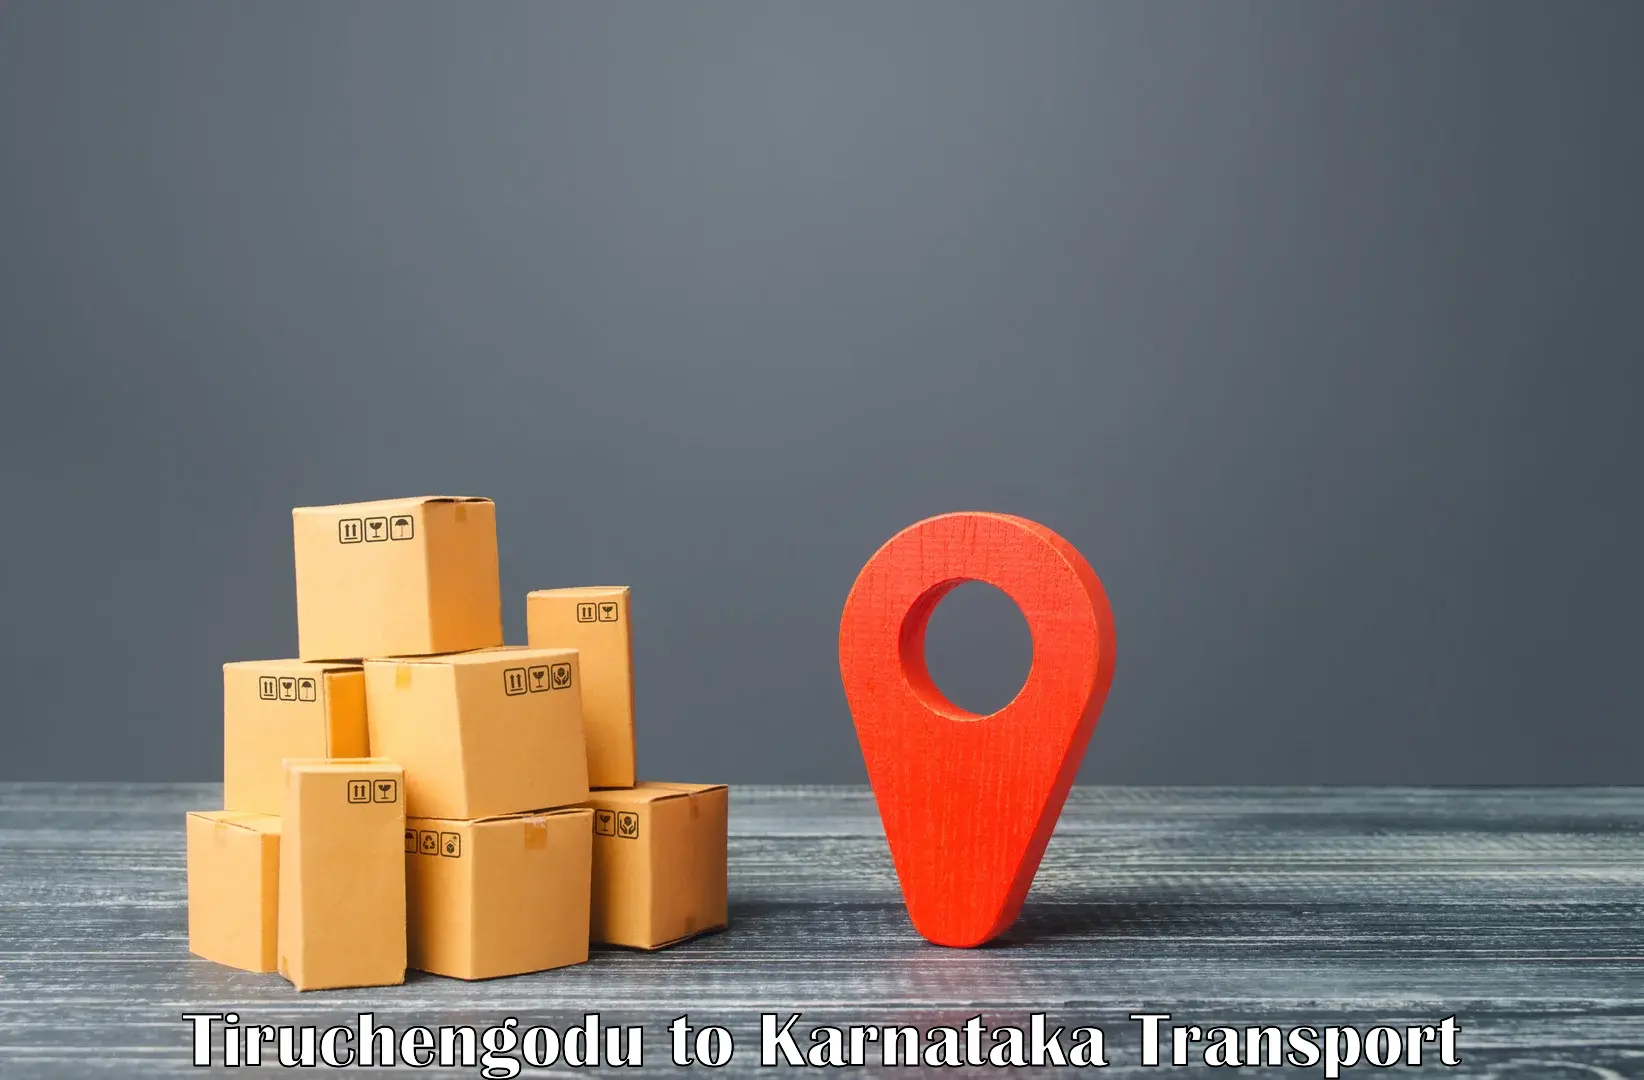 India truck logistics services Tiruchengodu to Rattihalli